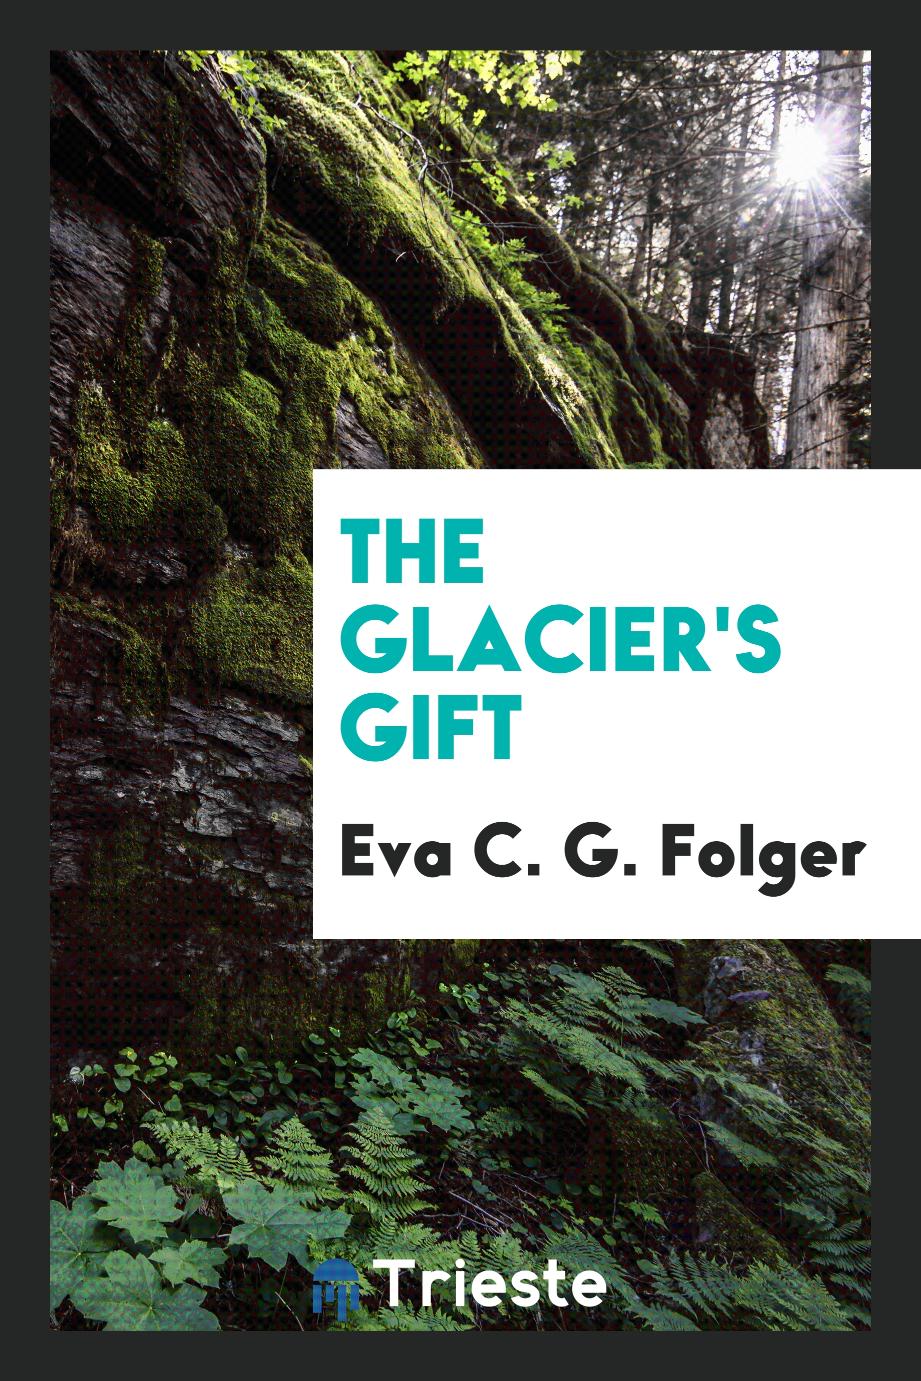 The Glacier's Gift